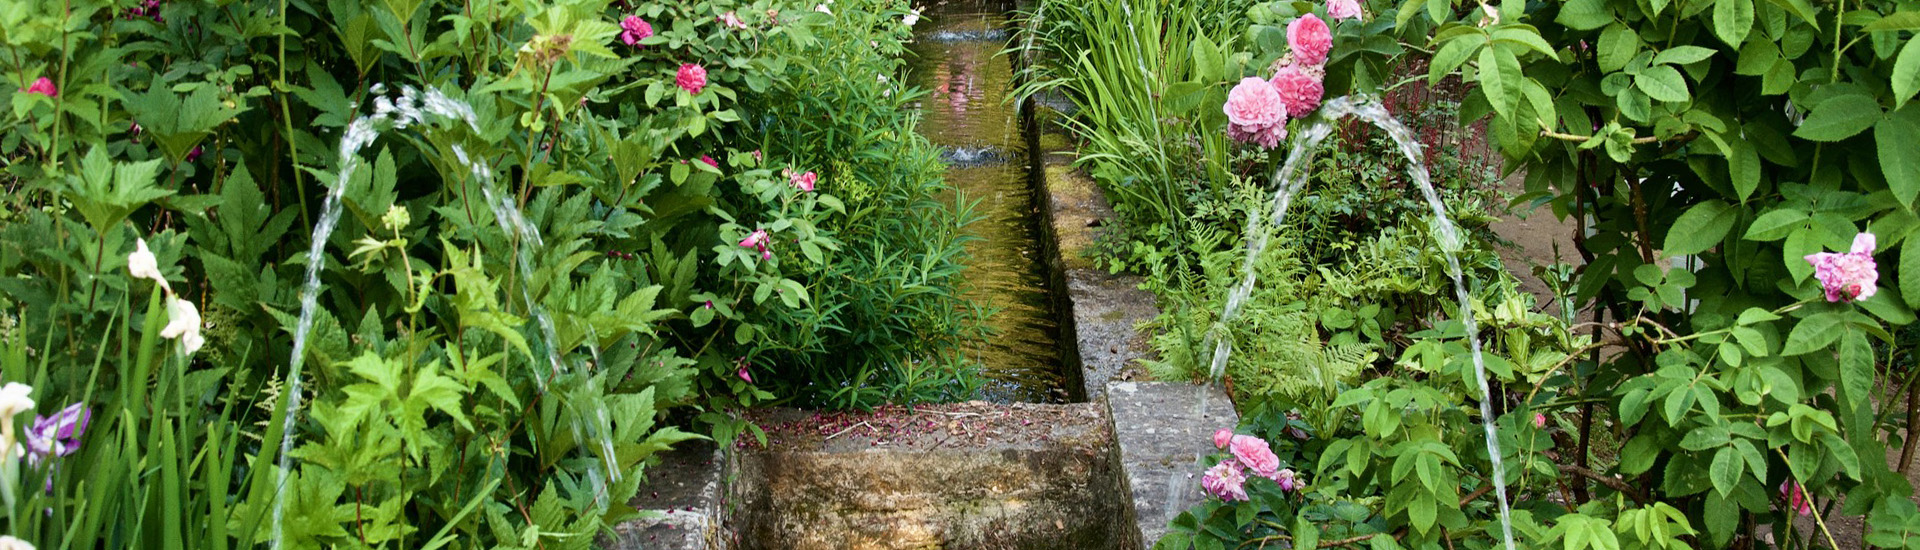 Une vue des bassins et fontaines du jardin d'inspiration oriental.